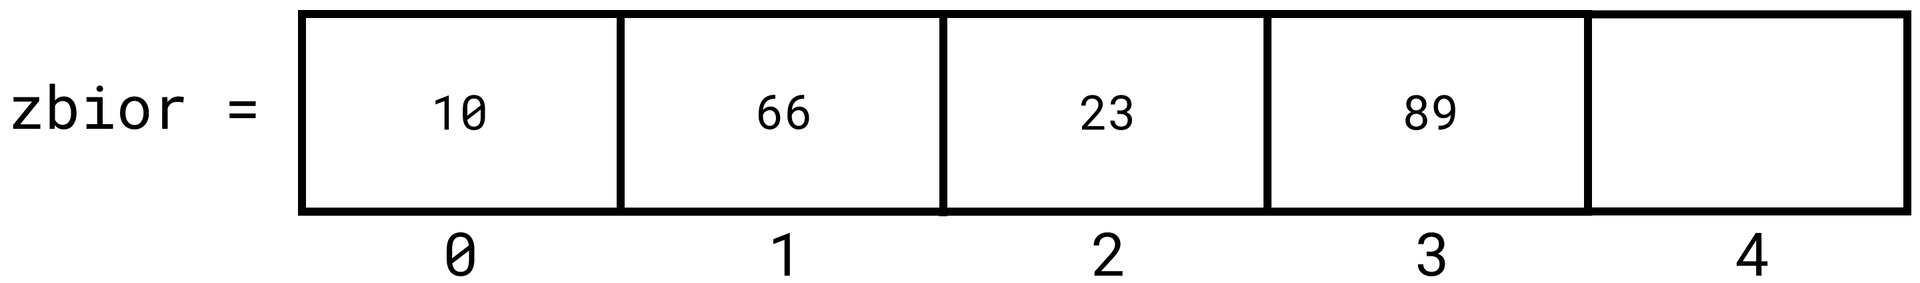 Grafika przedstawia napis "zbior = " a dalej znajduje się prostokątna długa tablica składająca się z pięciu prostokątnych pól. Pola są ponumerowane poniżej tablicy od zera do czterech, licząc od lewej strony. W pierwszym polu z indeksem 0 wpisano liczbę 10. W drugim polu z indeksem 1 wpisano liczbę 66. W trzecim polu z indeksem 2 wpisano liczbę 23.W czwartym polu z indeksem 3 wpisano liczbę 89.